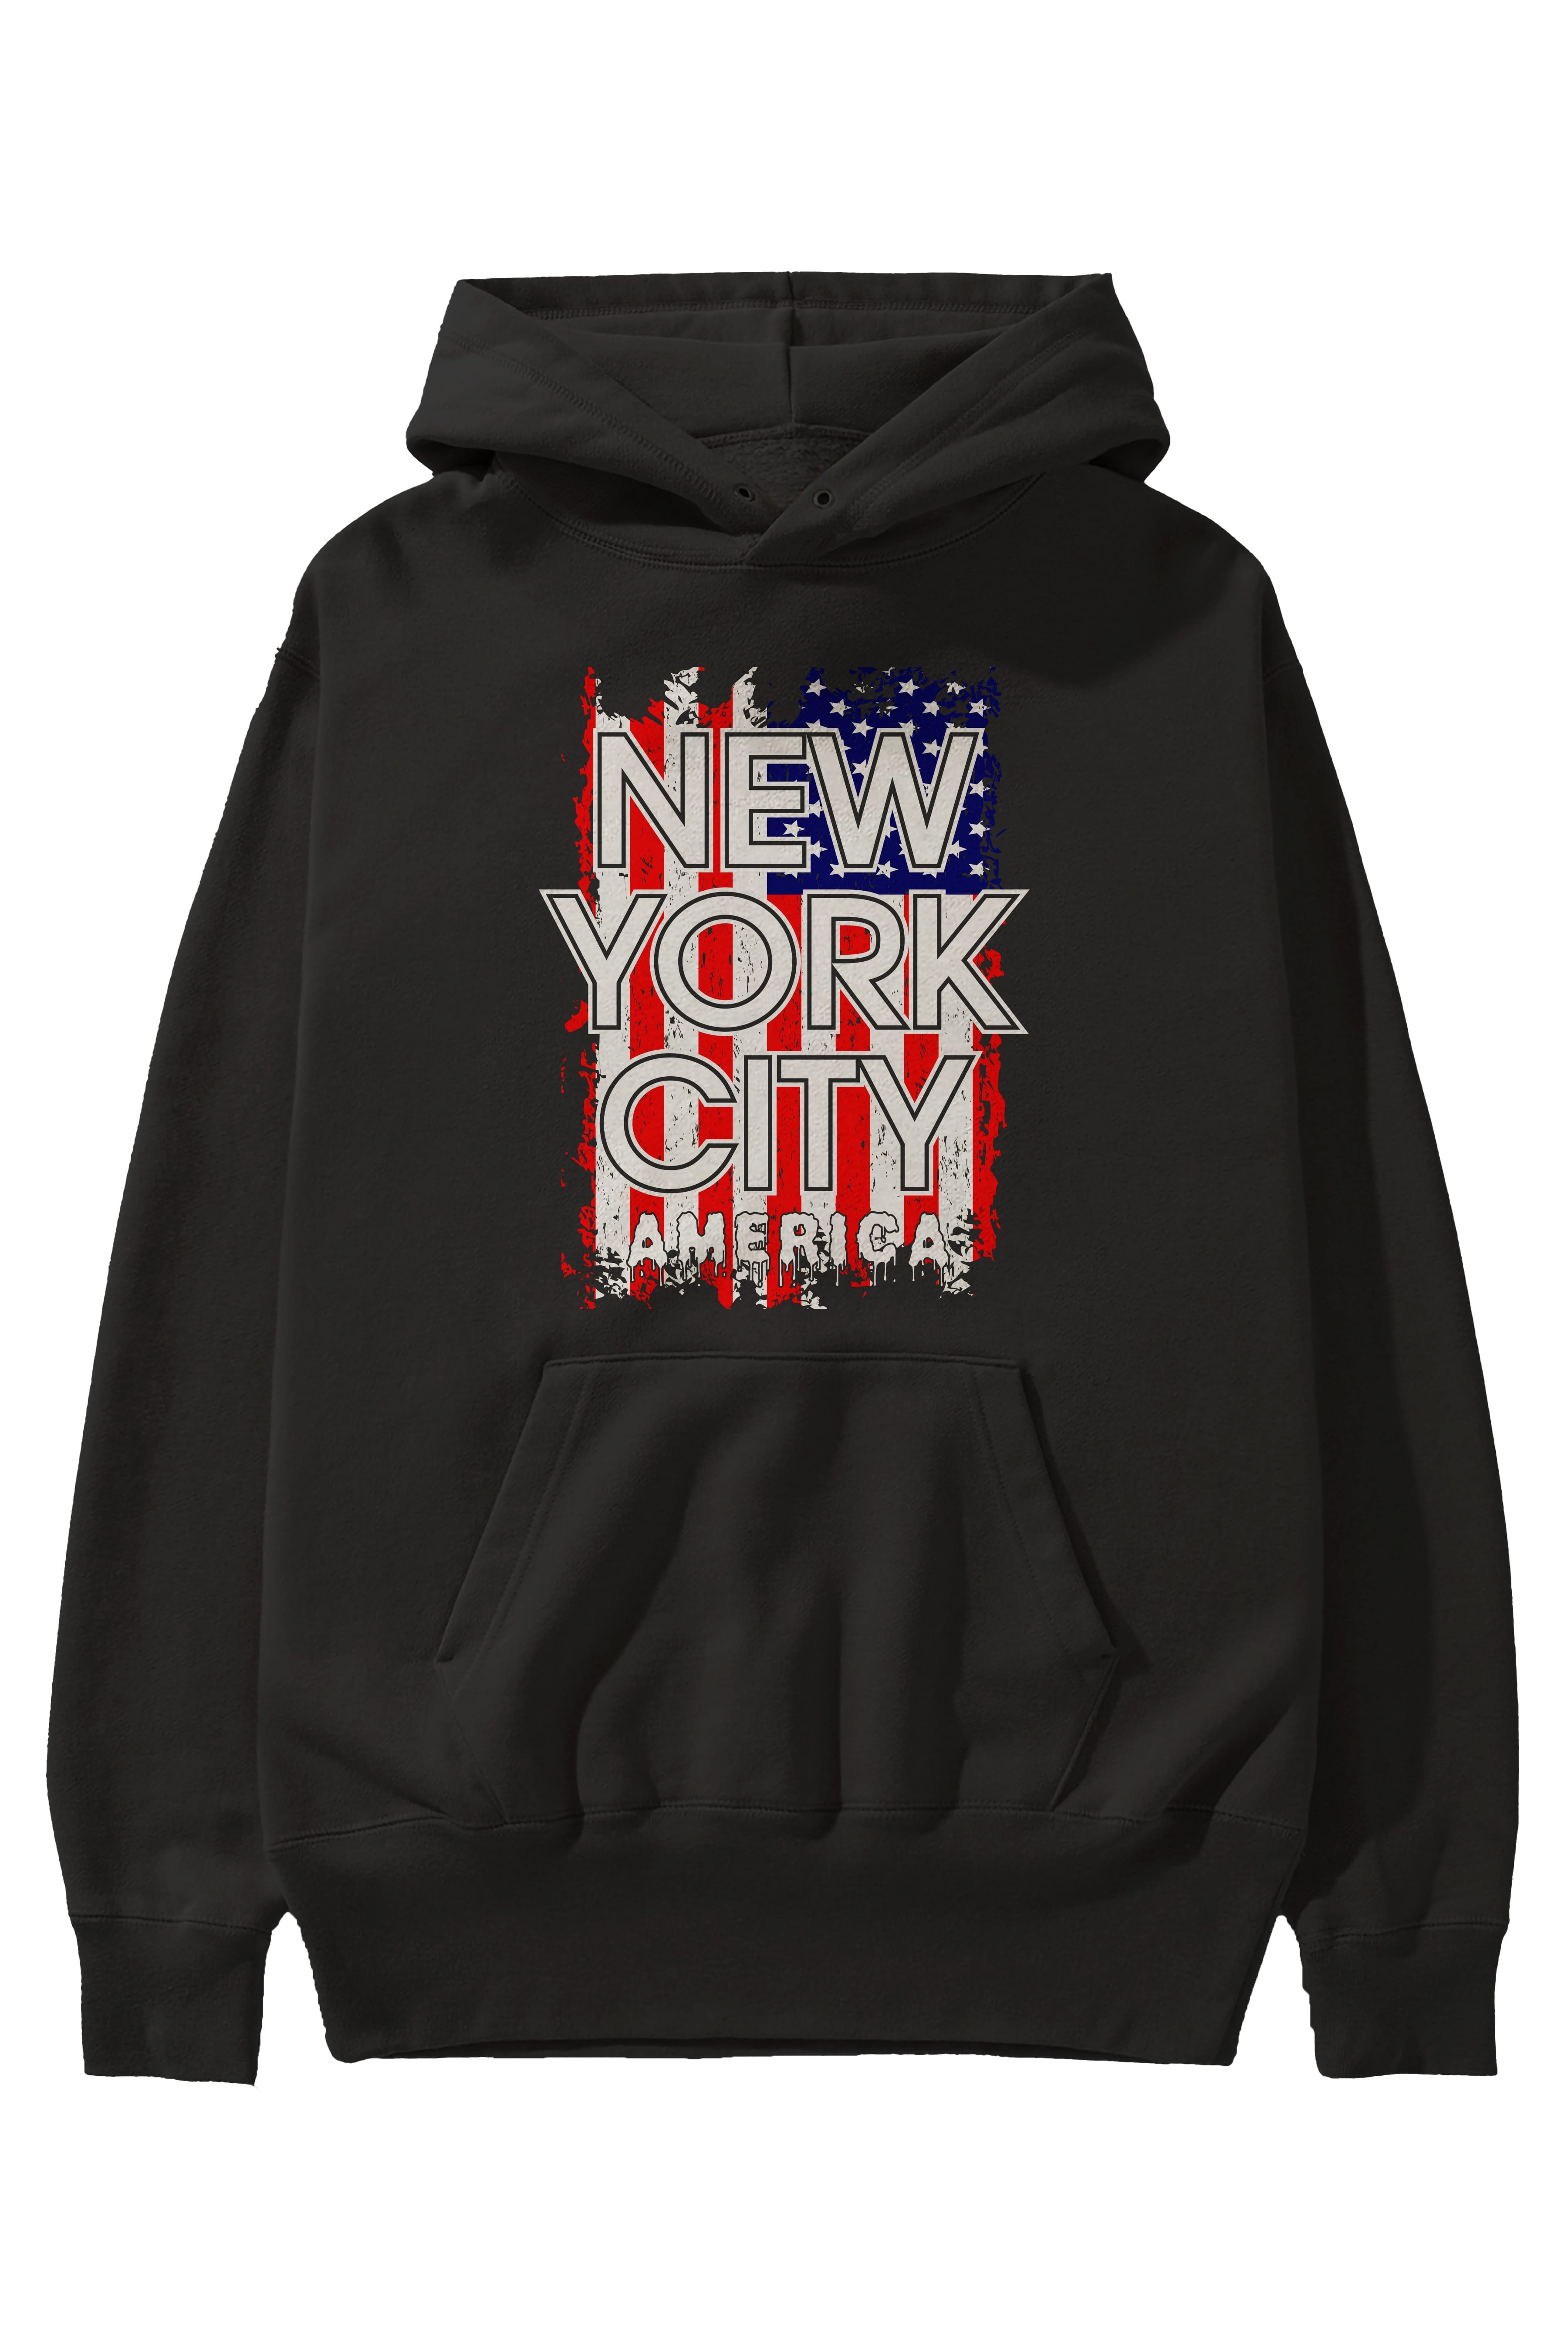 New York City 2 Ön Baskılı Oversize Hoodie Kapüşonlu Sweatshirt Erkek Kadın Unisex